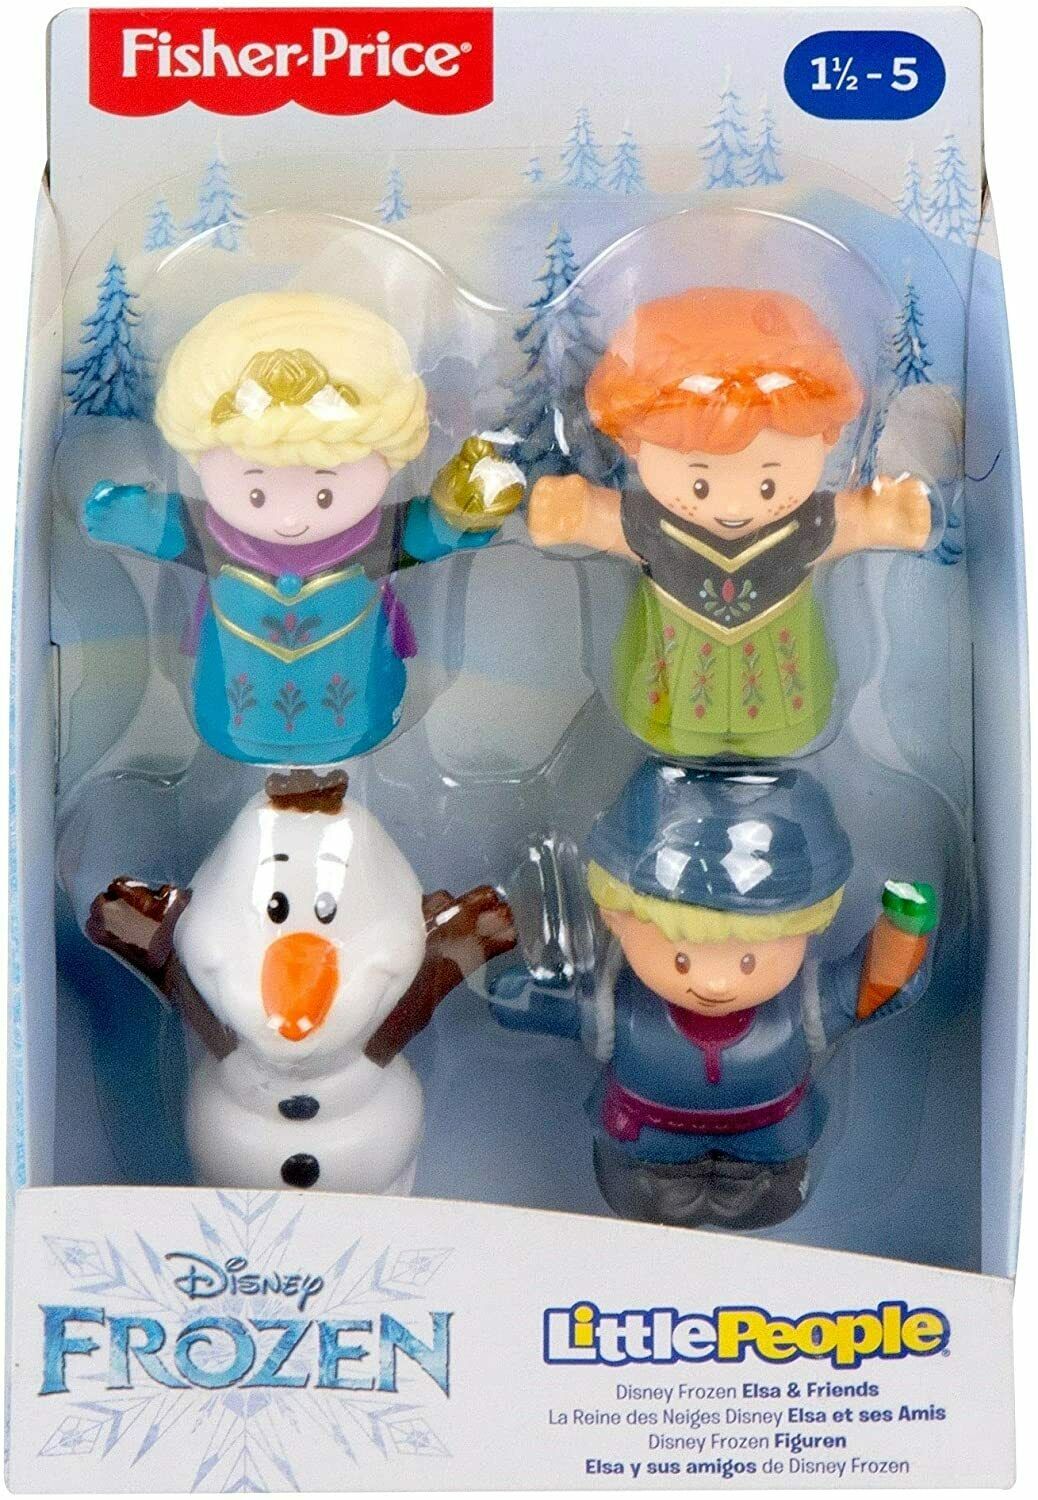 Fisher-price - Disney Frozen Elsa & Friends By Little People, Figure 4-pack